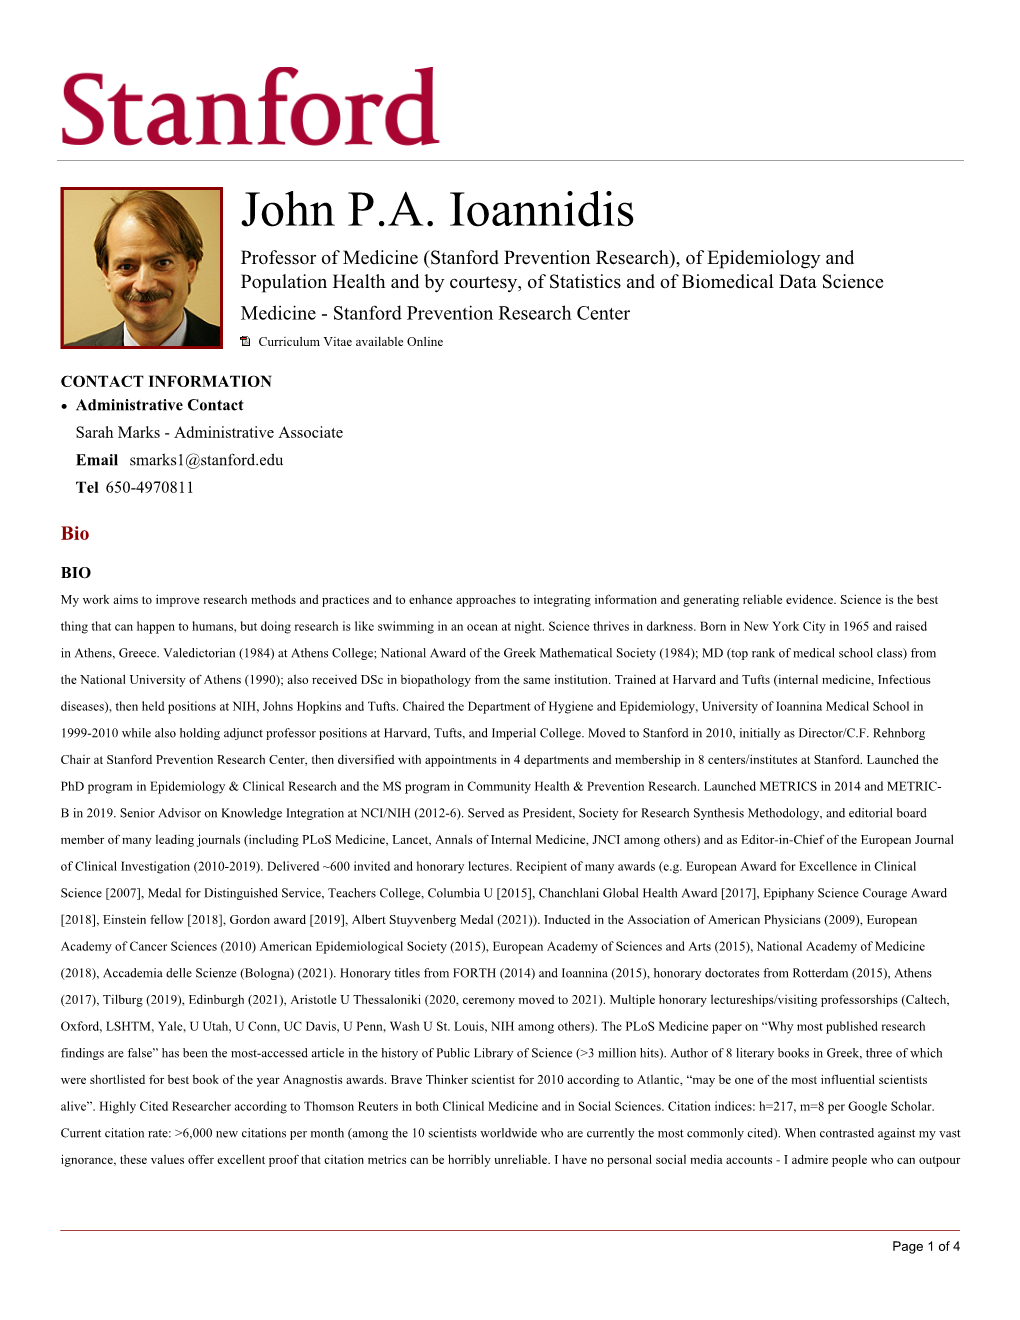 John P.A. Ioannidis